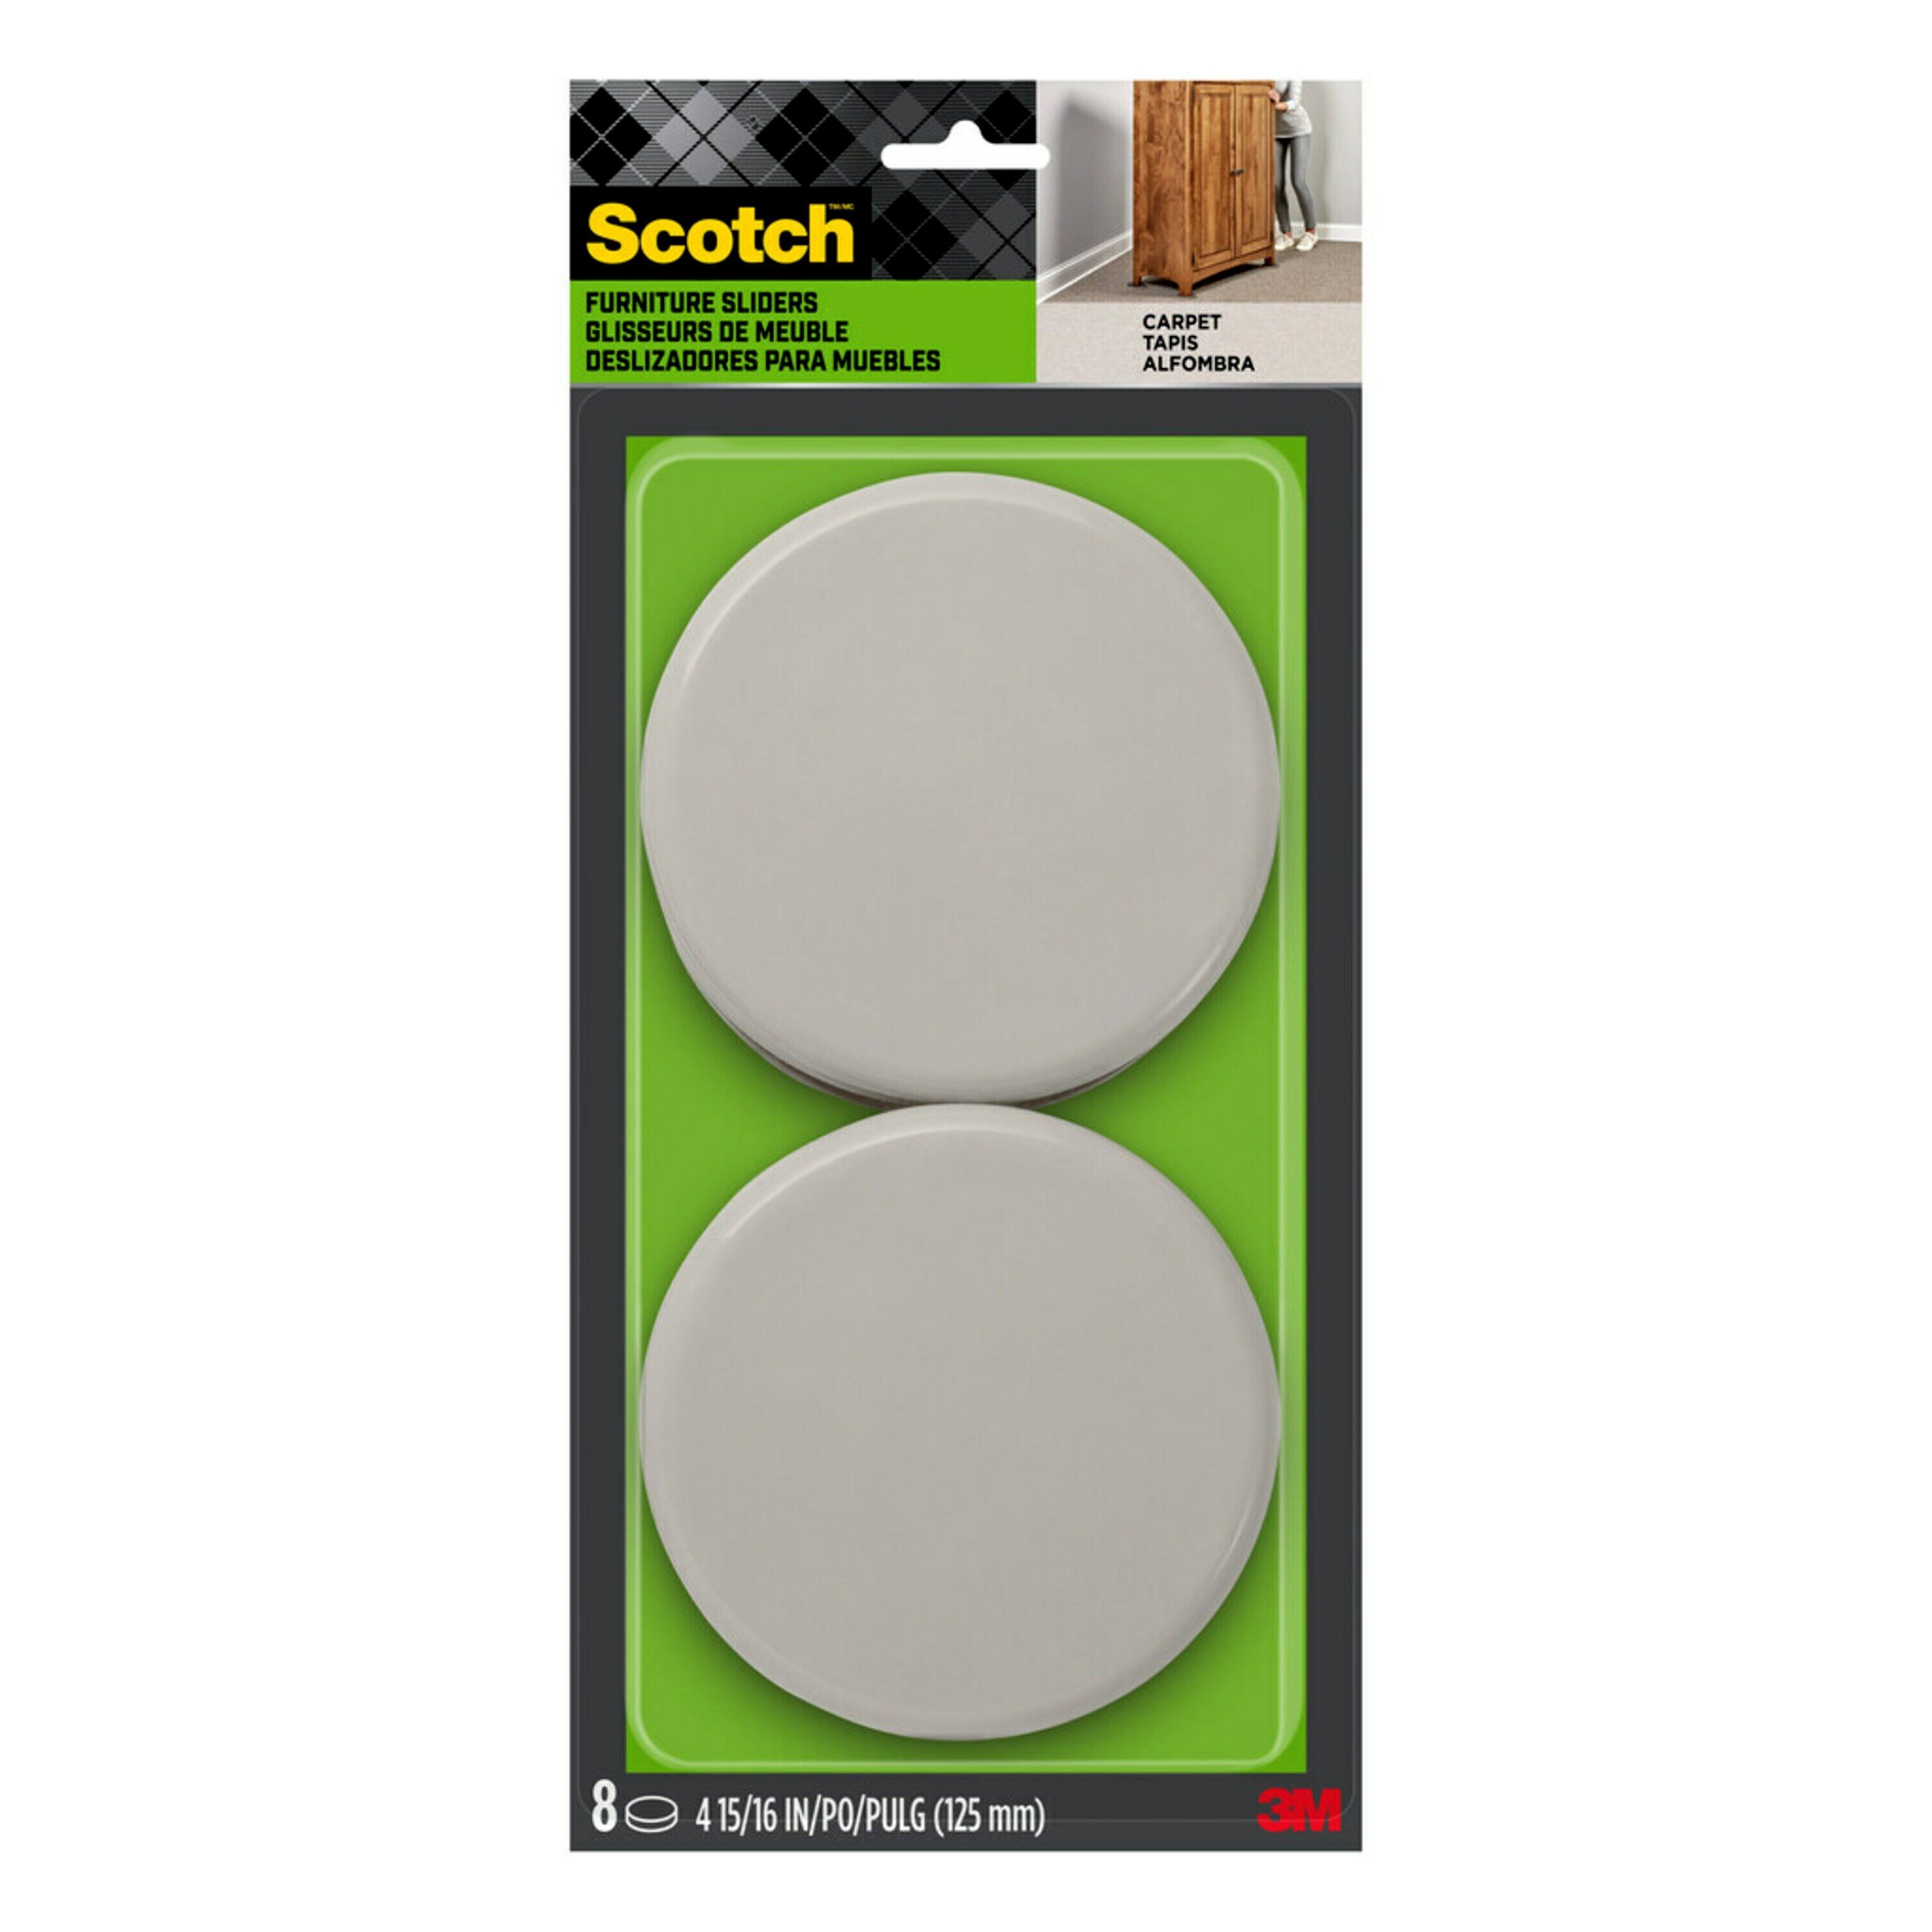 Scotch 8-Pack 5 In Round Plastic Carpet Furniture Slider in the